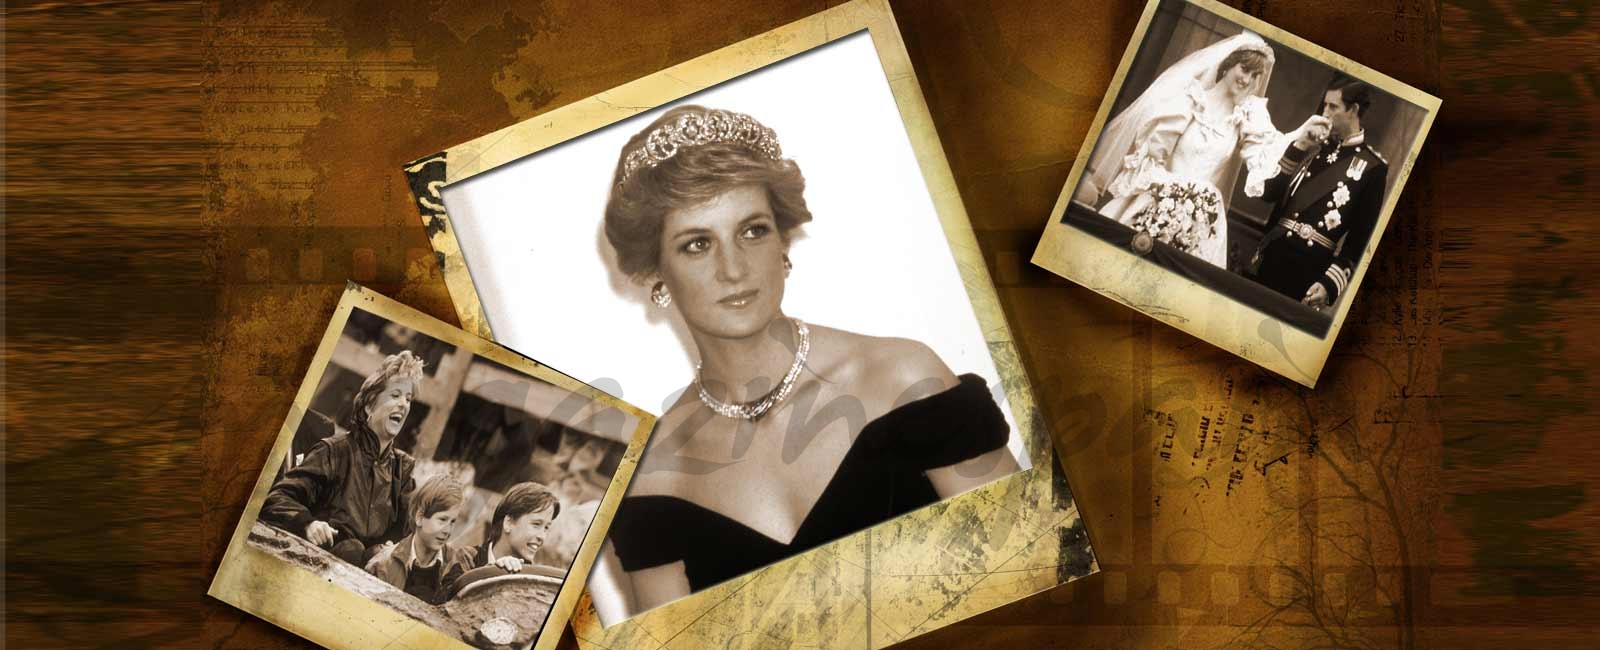 Especial Princesa Diana: 20 aniversario de su muerte